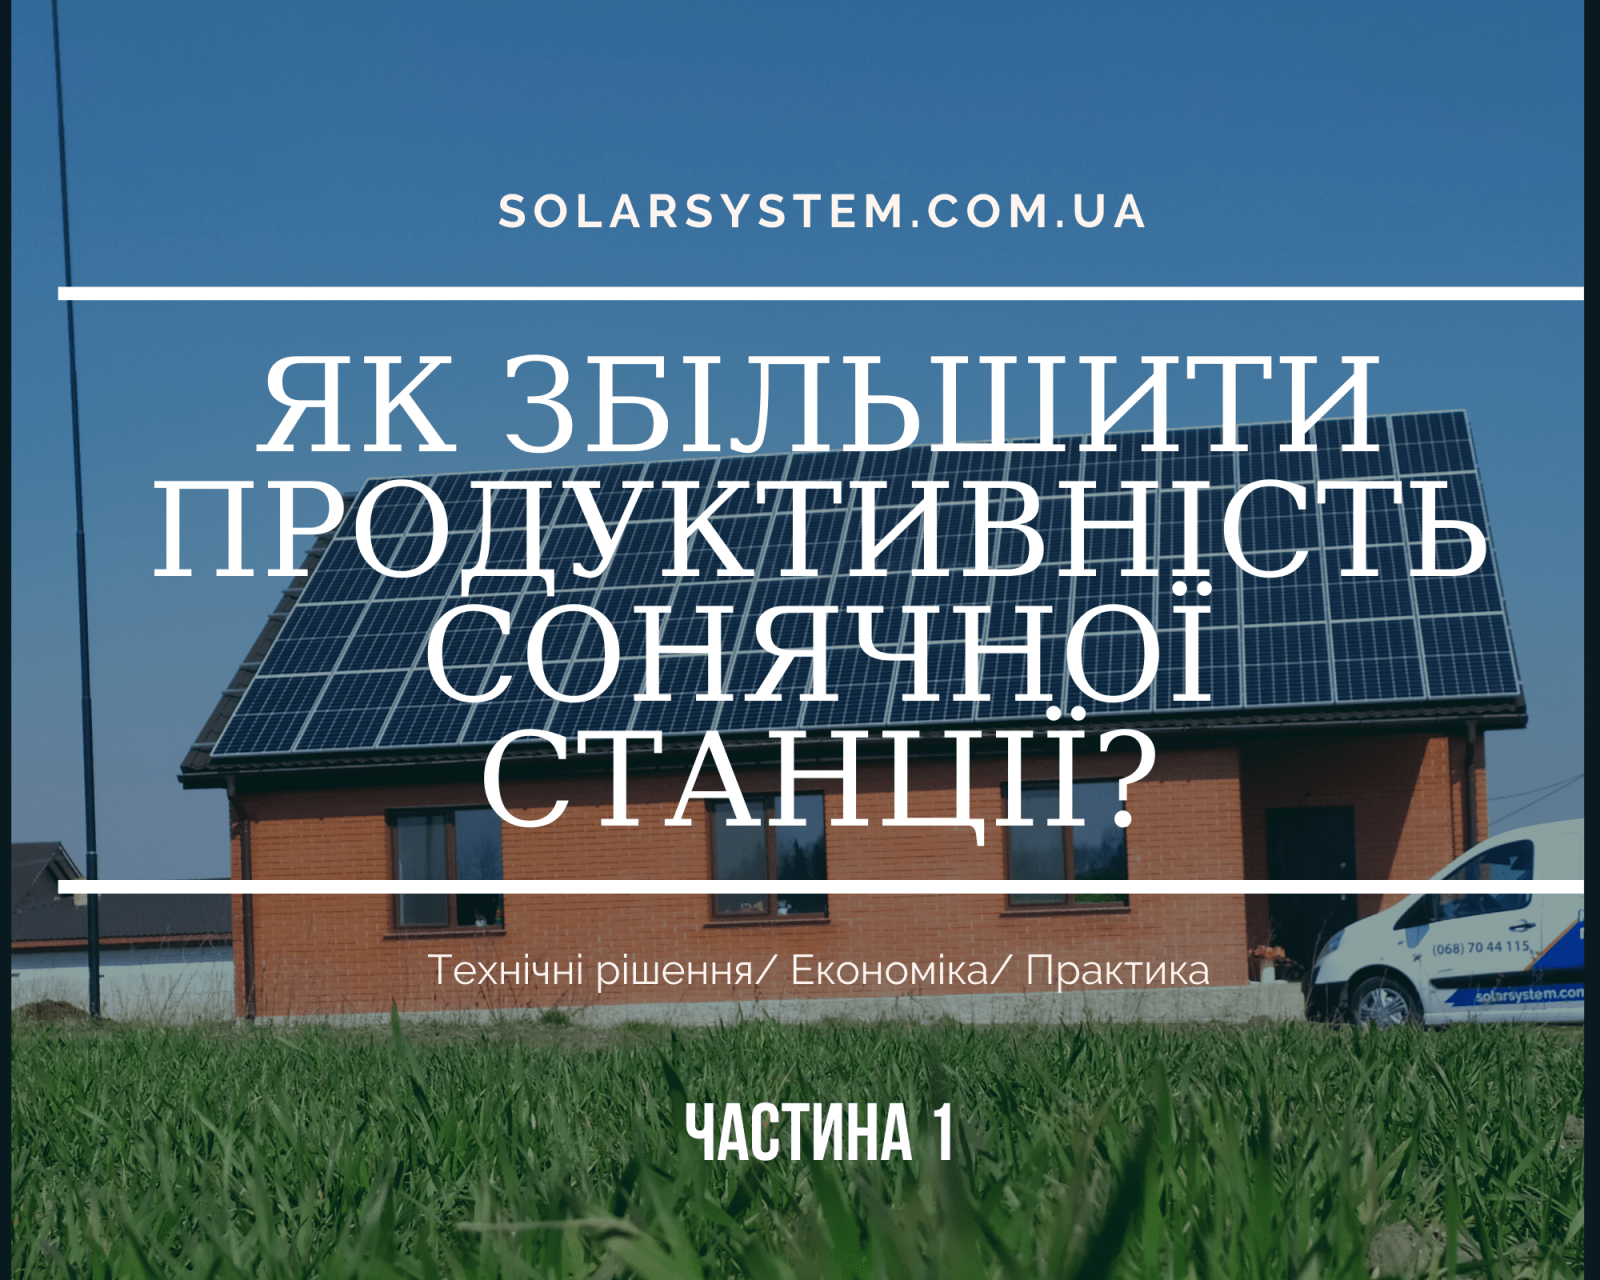 Як збільшити продуктивність сонячної електростанції? Технічні рішення/ Економіка/ Практичний досвід